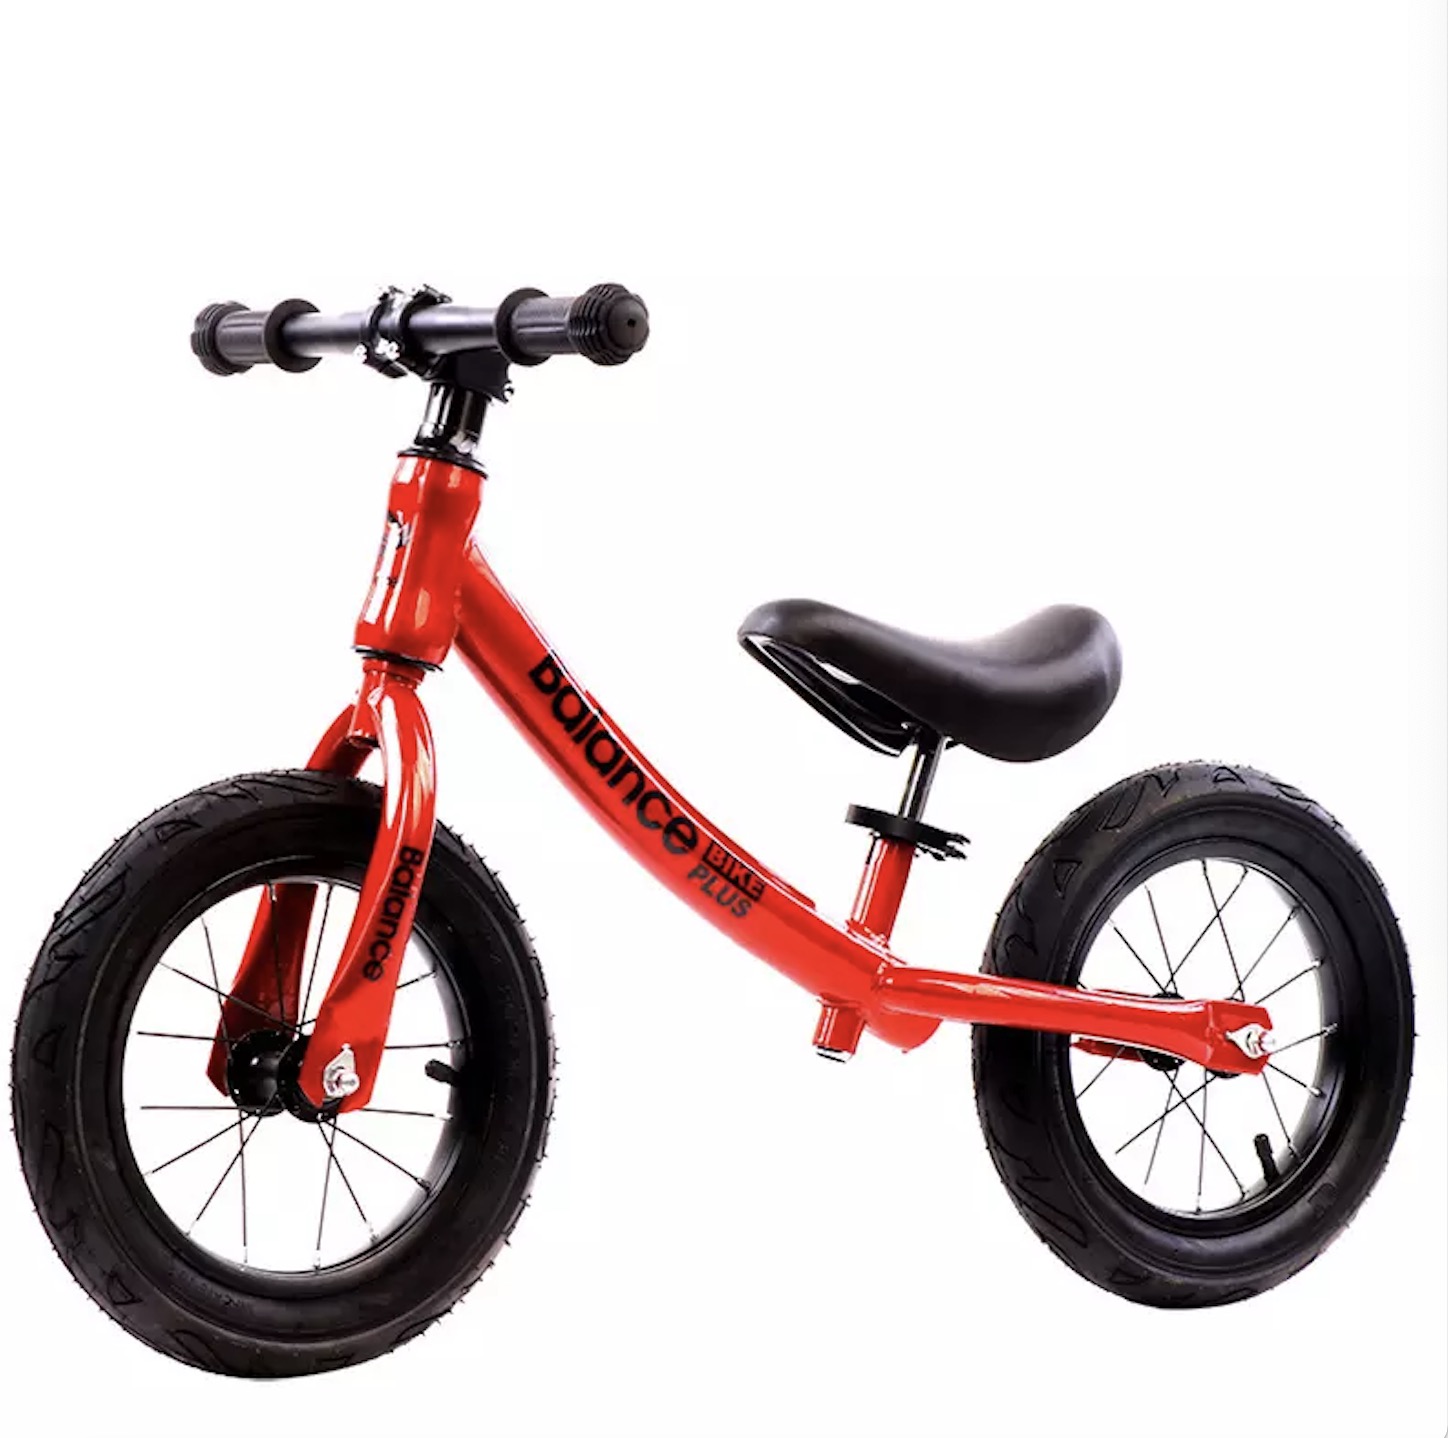 10 db 12 hüvelykes fiú kisgyermek kerékpár első egyensúlykerékpár 2-8 éves korig / Gyári eladó 12 hüvelykes gyerek egyensúlykerékpár